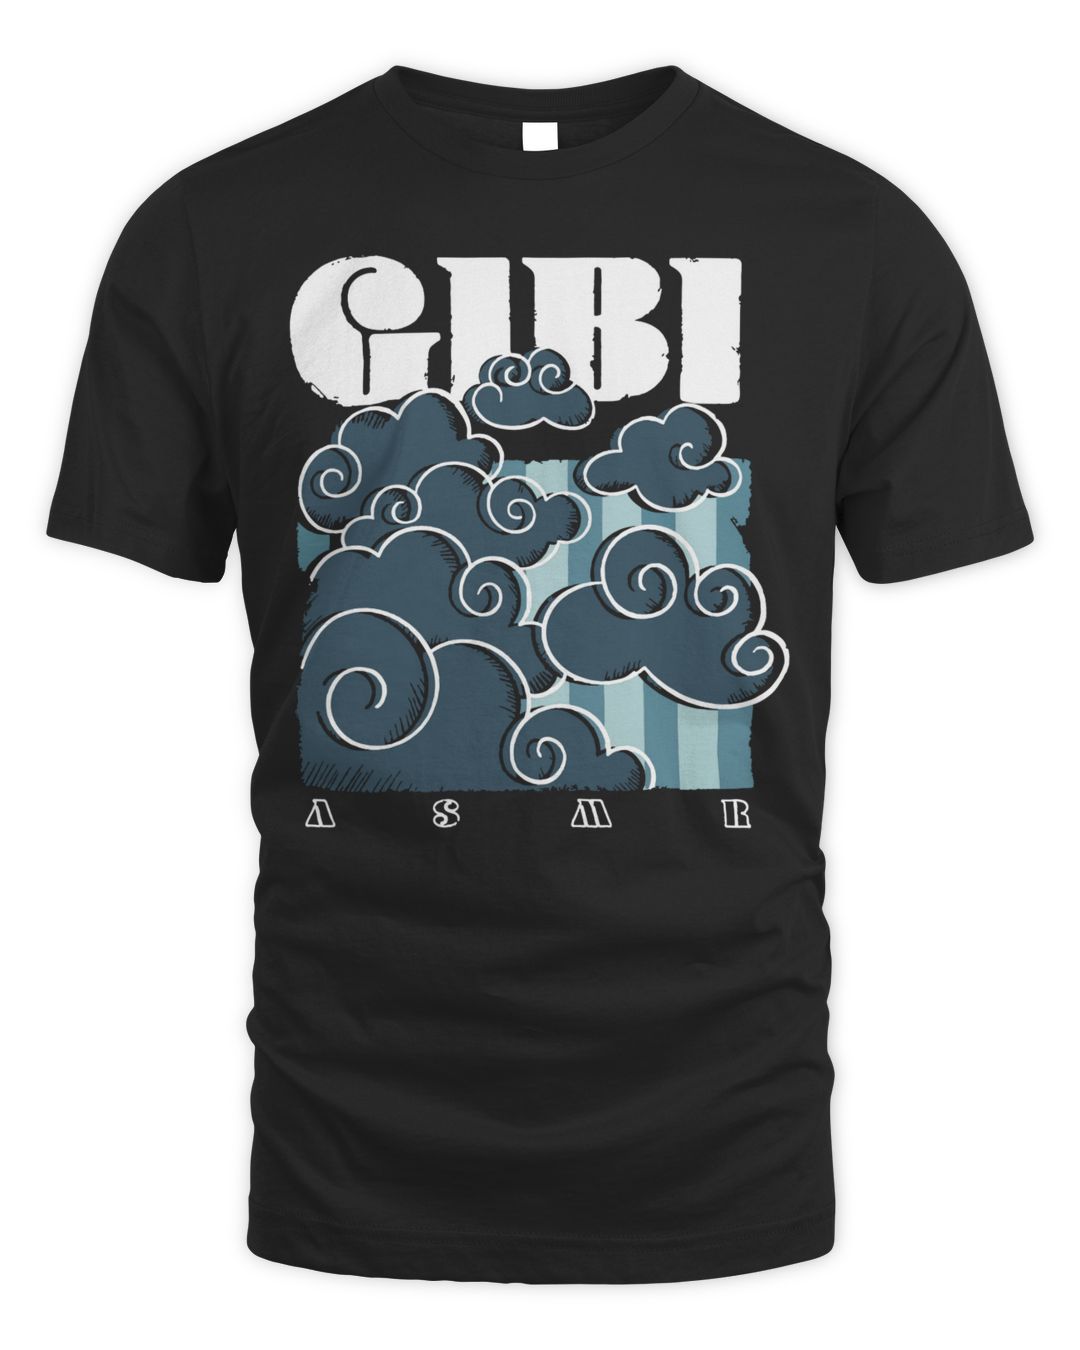 Gibi Merch Graphic Shirt